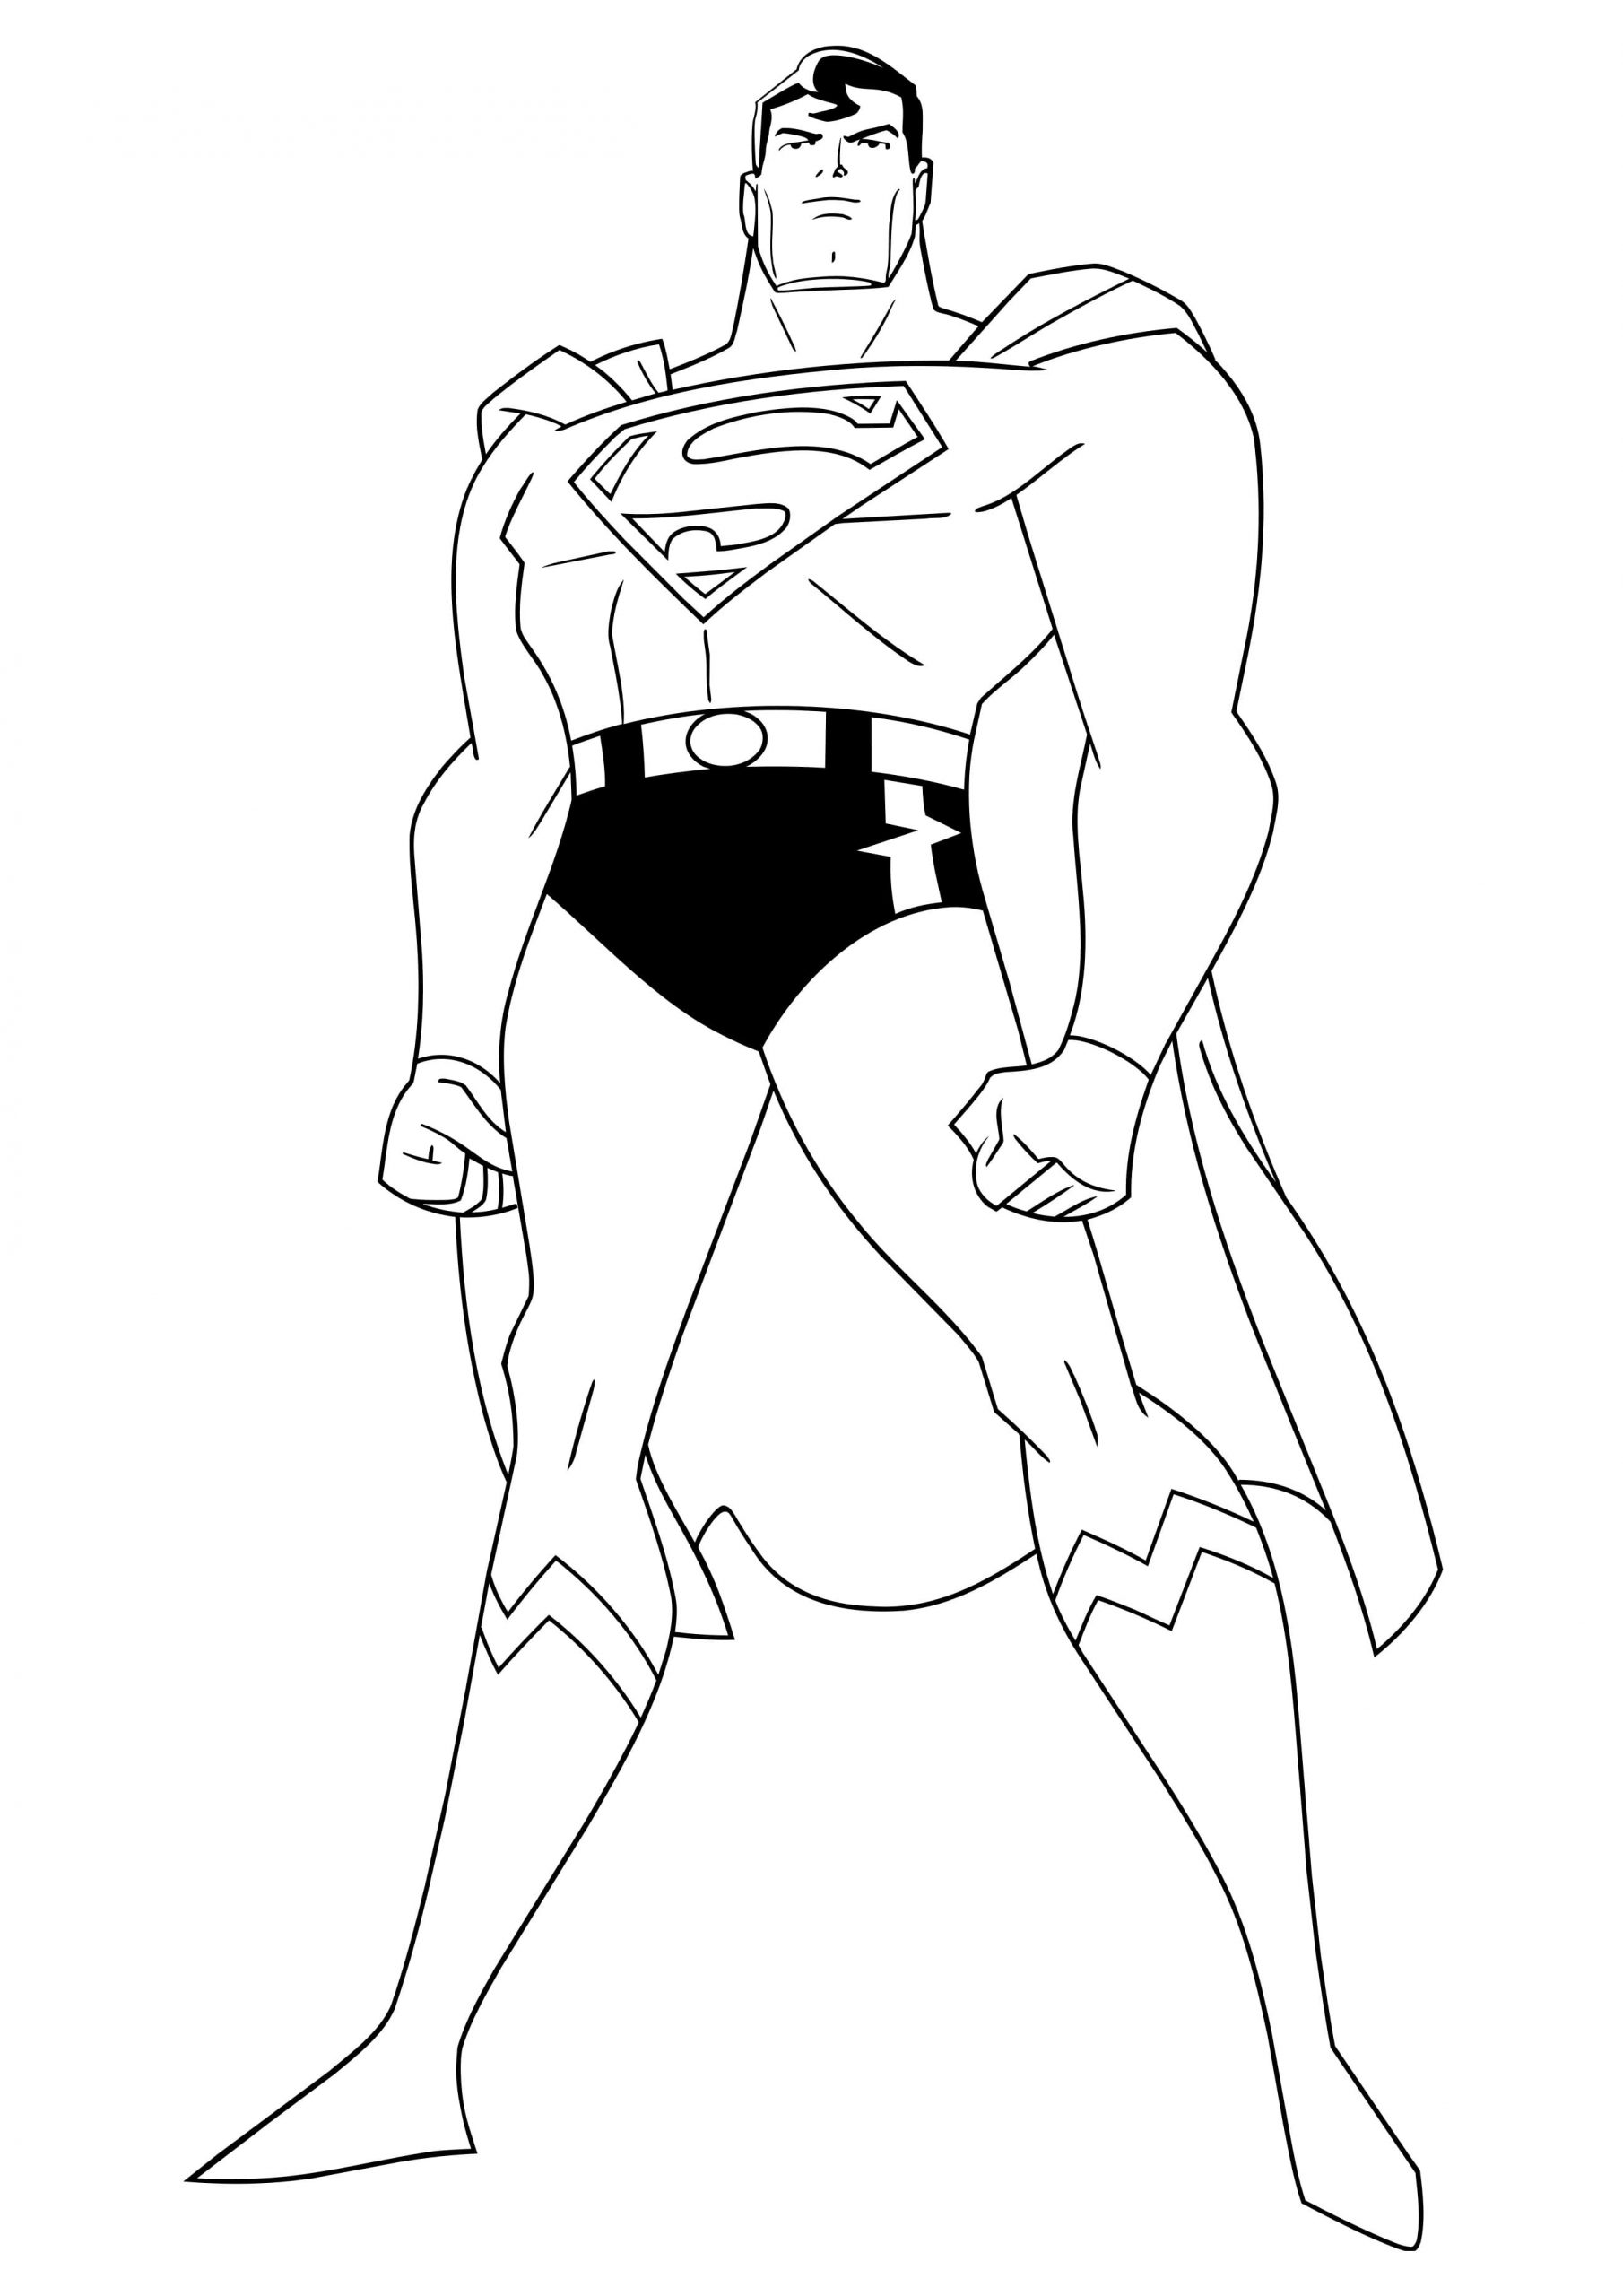 Stojí za zmínku, že Superman má úžasné svaly. omalovánka